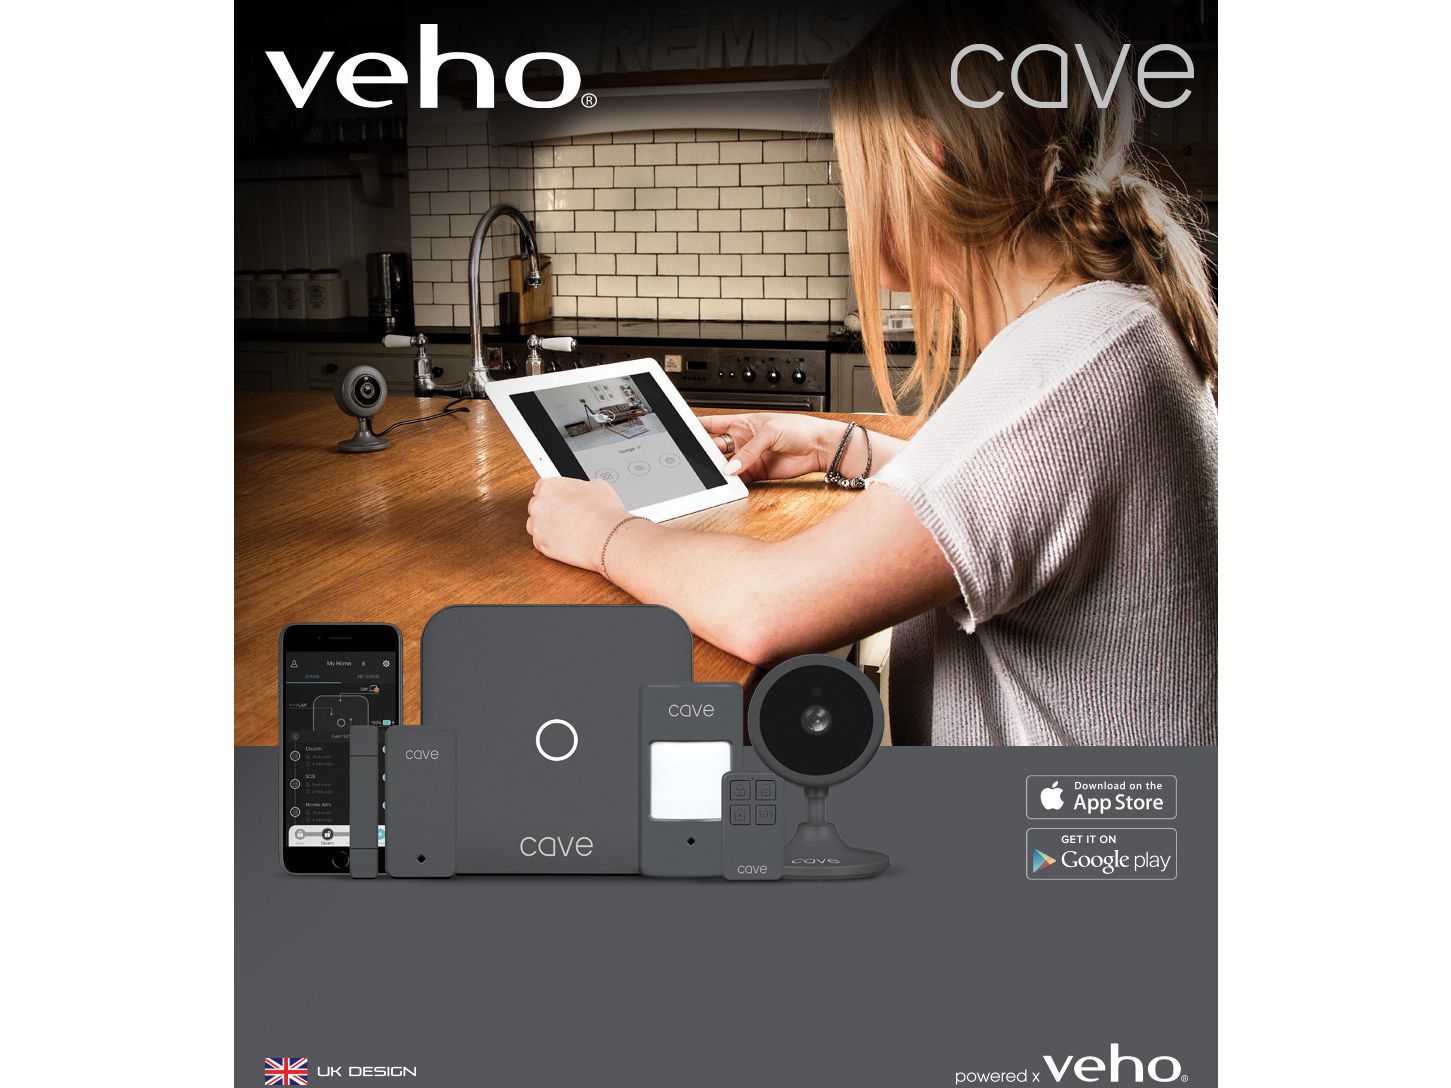 veho-cave-smart-home-starter-kit